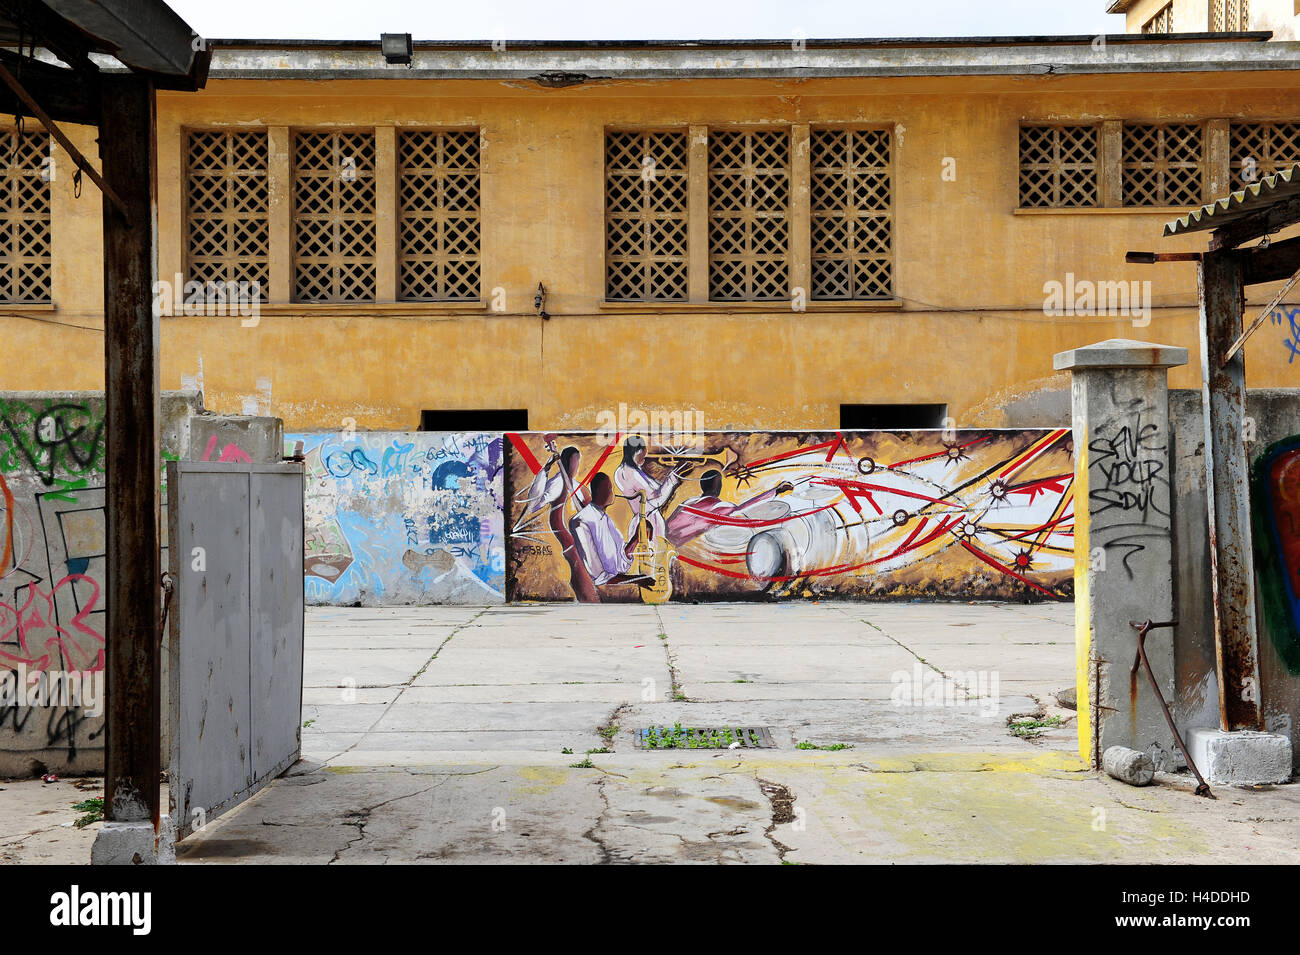 The “Fabrique Culturelle des Anciens Abattoirs de Casablanca”, a slaughterhouse turned cultural centre. Stock Photo